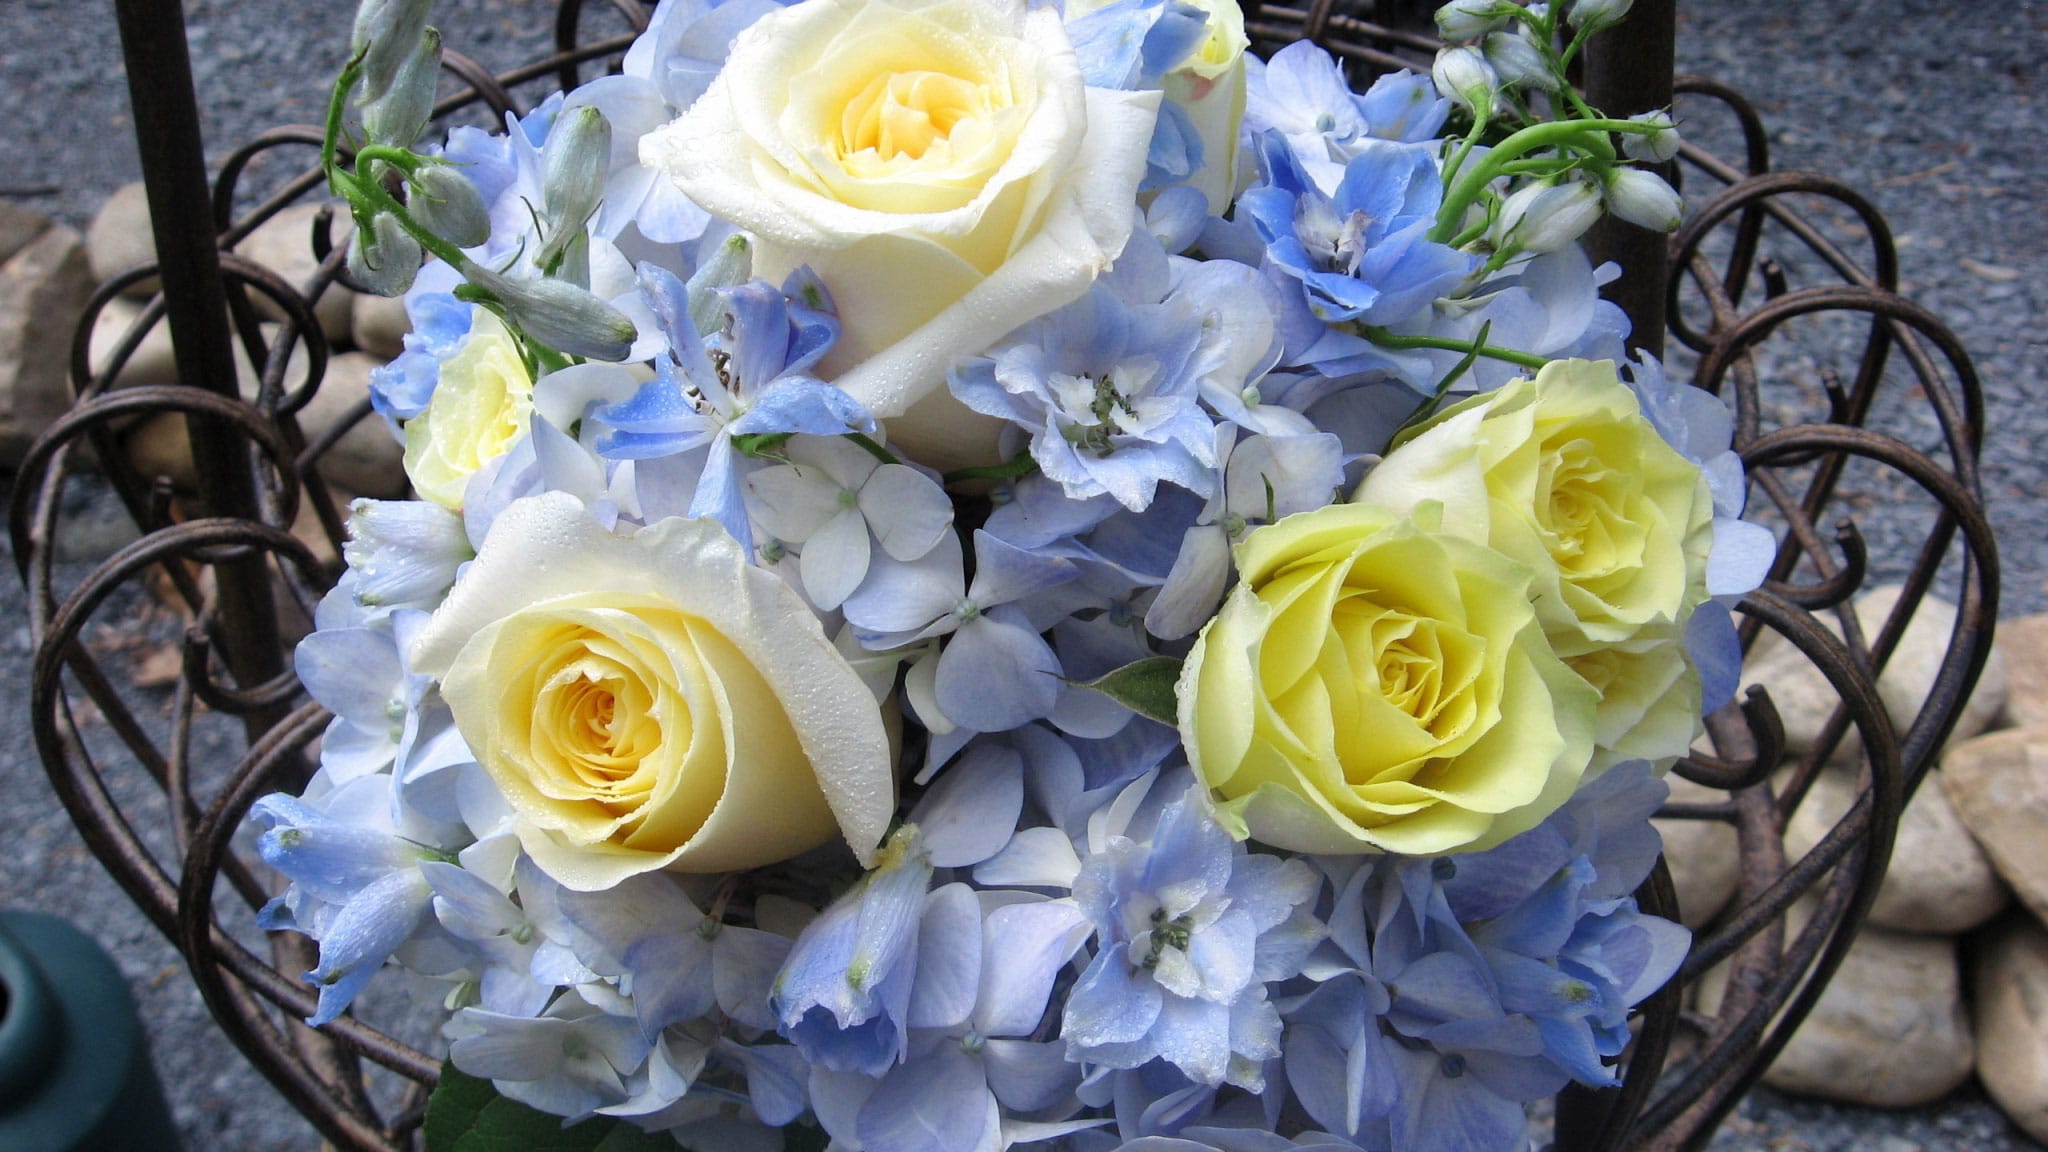 Fotky krásných květinových kytic. 80 kvalitních obrázků zdarma